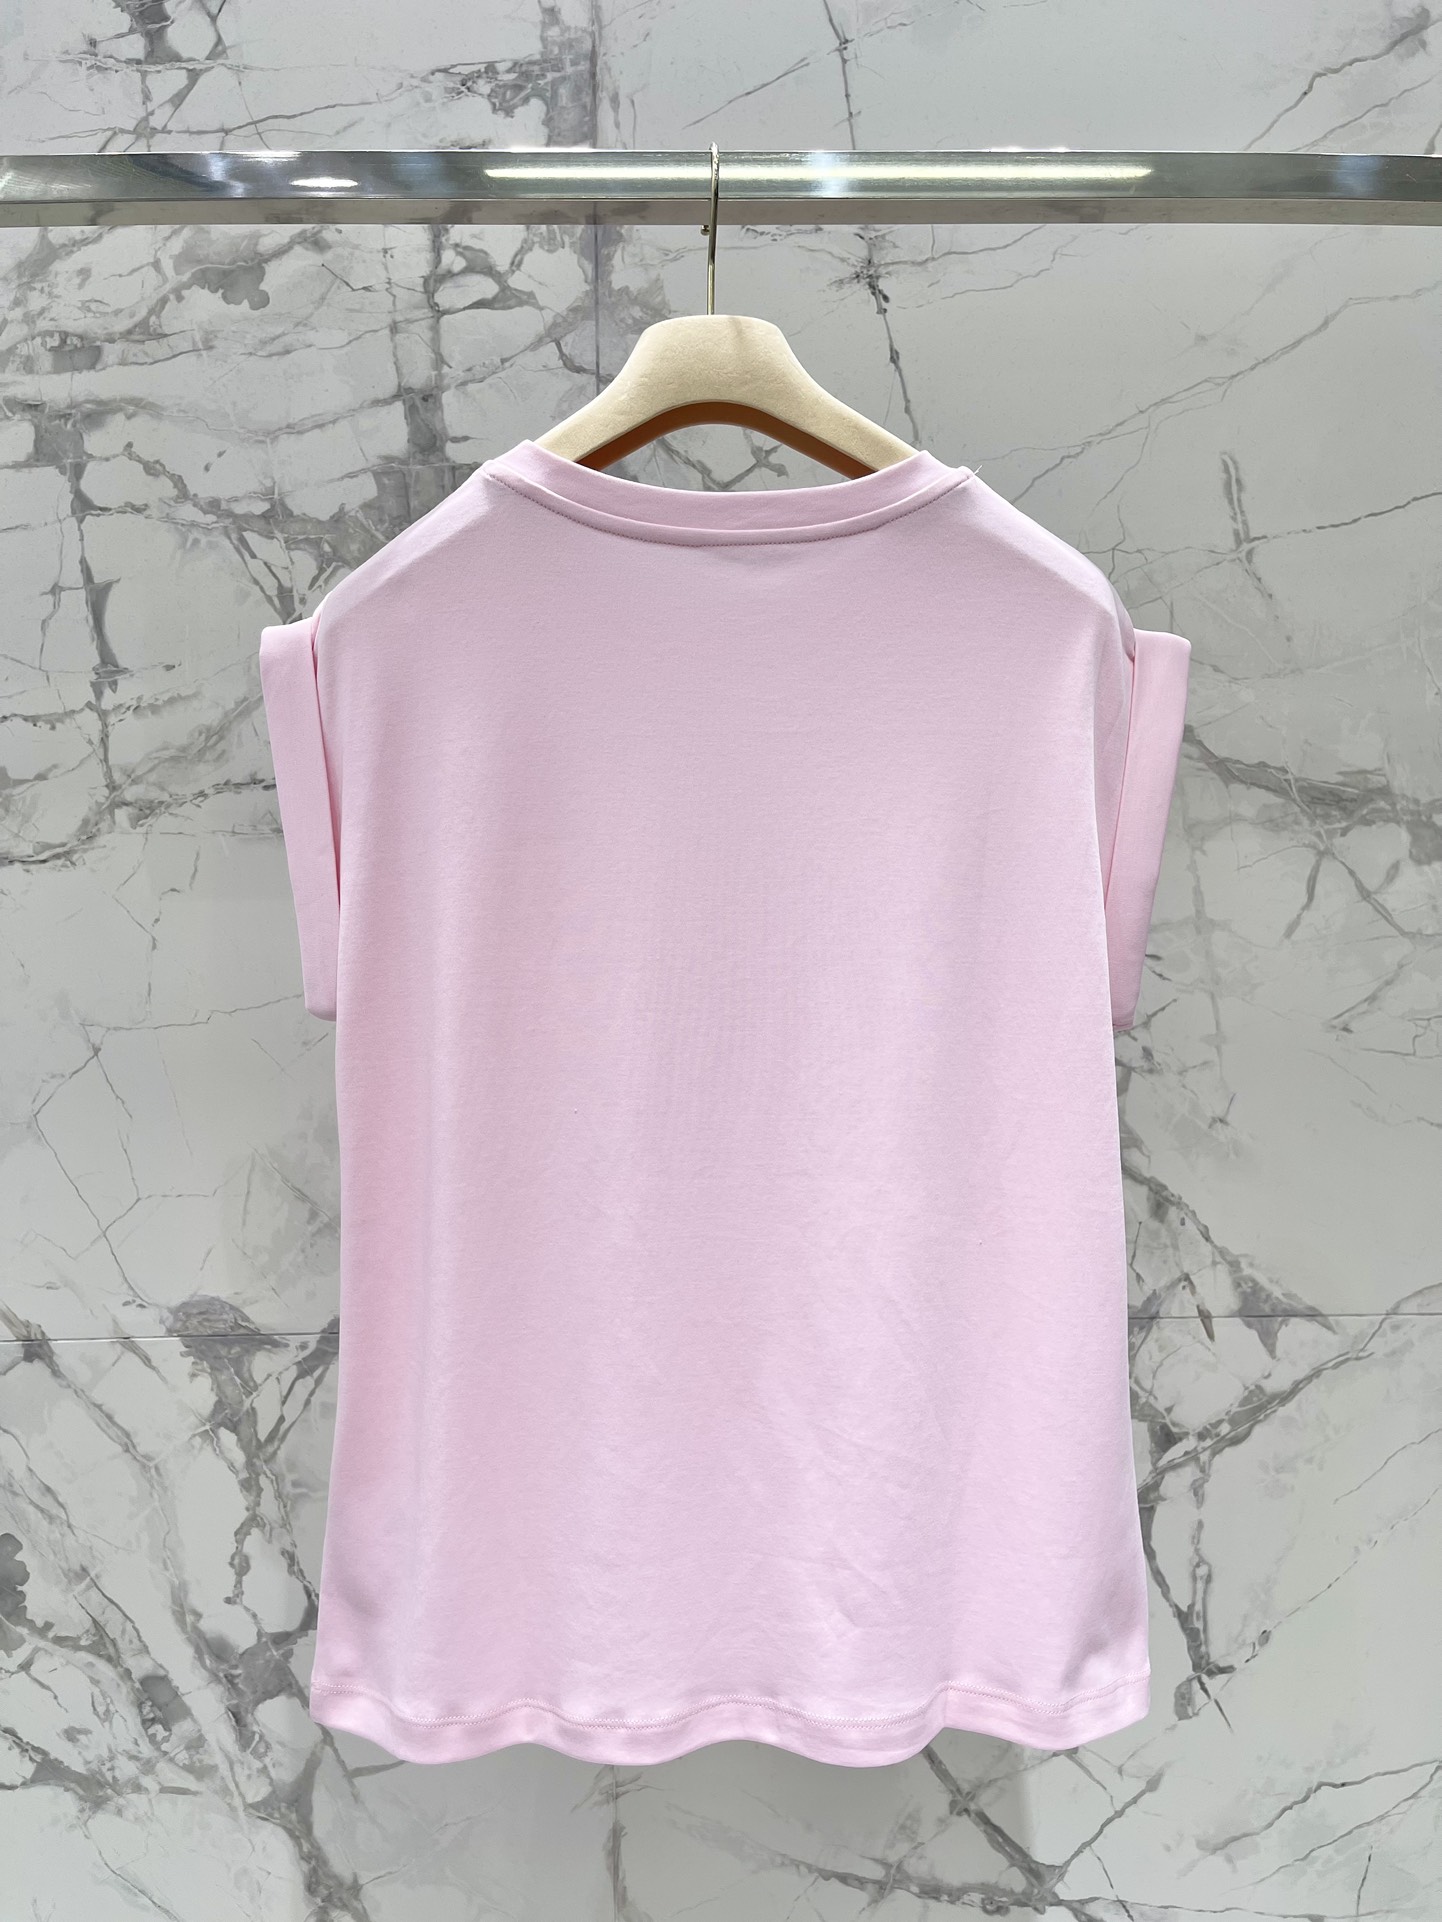 ミュウミュウスカーフスーパーコピー 柔らかい 無袖 Tシャツ トップス ファッション カジュアル 人気 シンプル ピンク_10